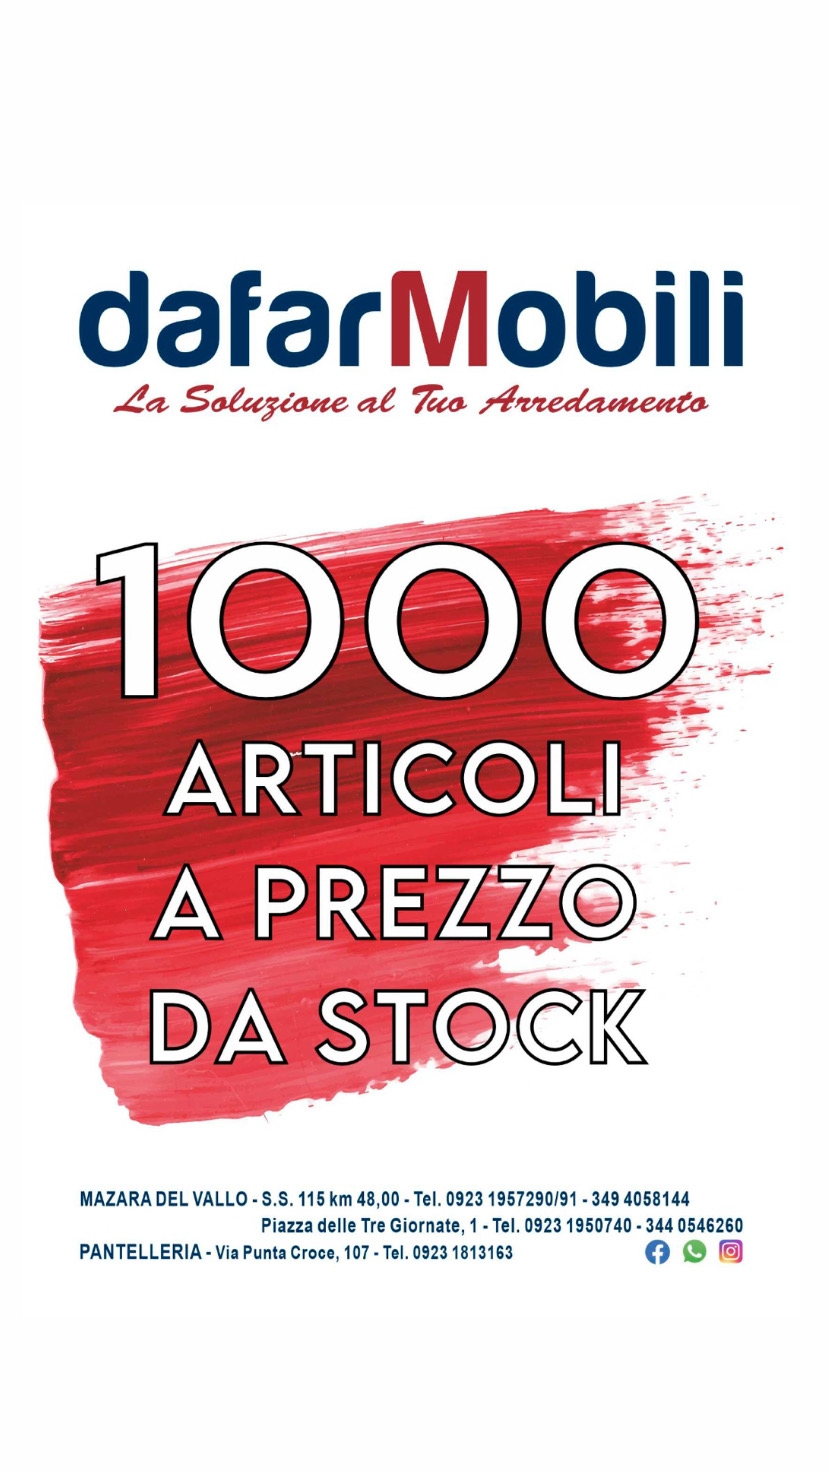 1000 articoli a prezzi da Stock